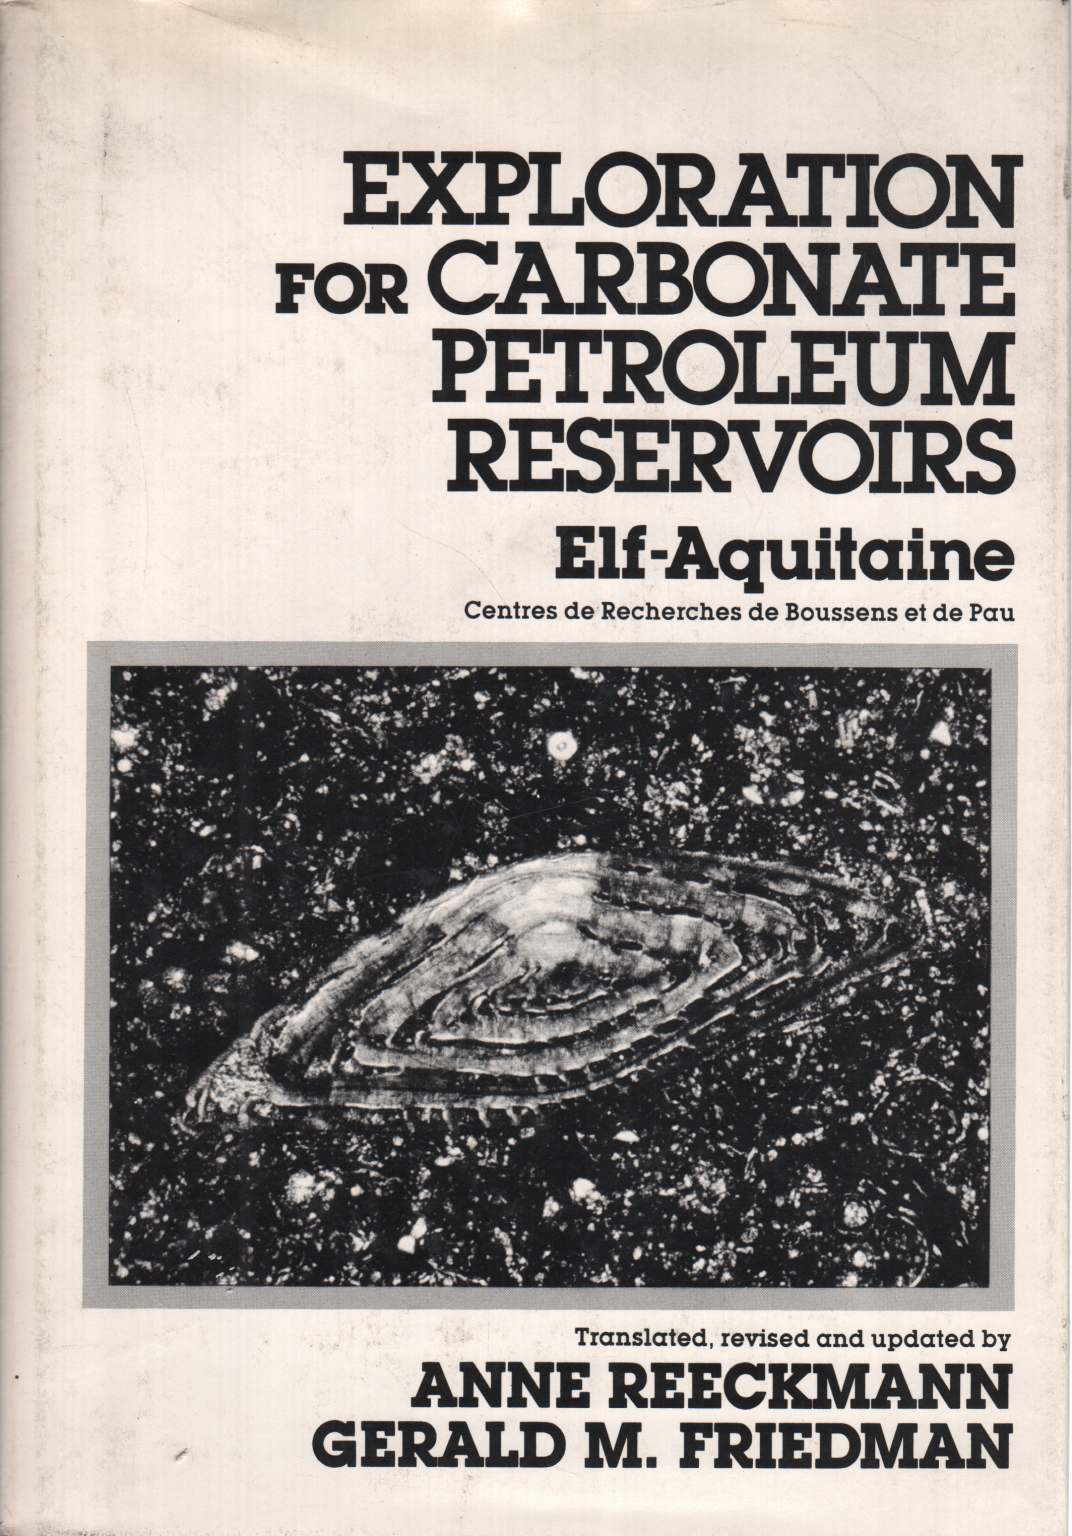 L'Exploration du carbonate de pétrole de réservoirs par Anne Reeckmann, Gerald M. Friedman